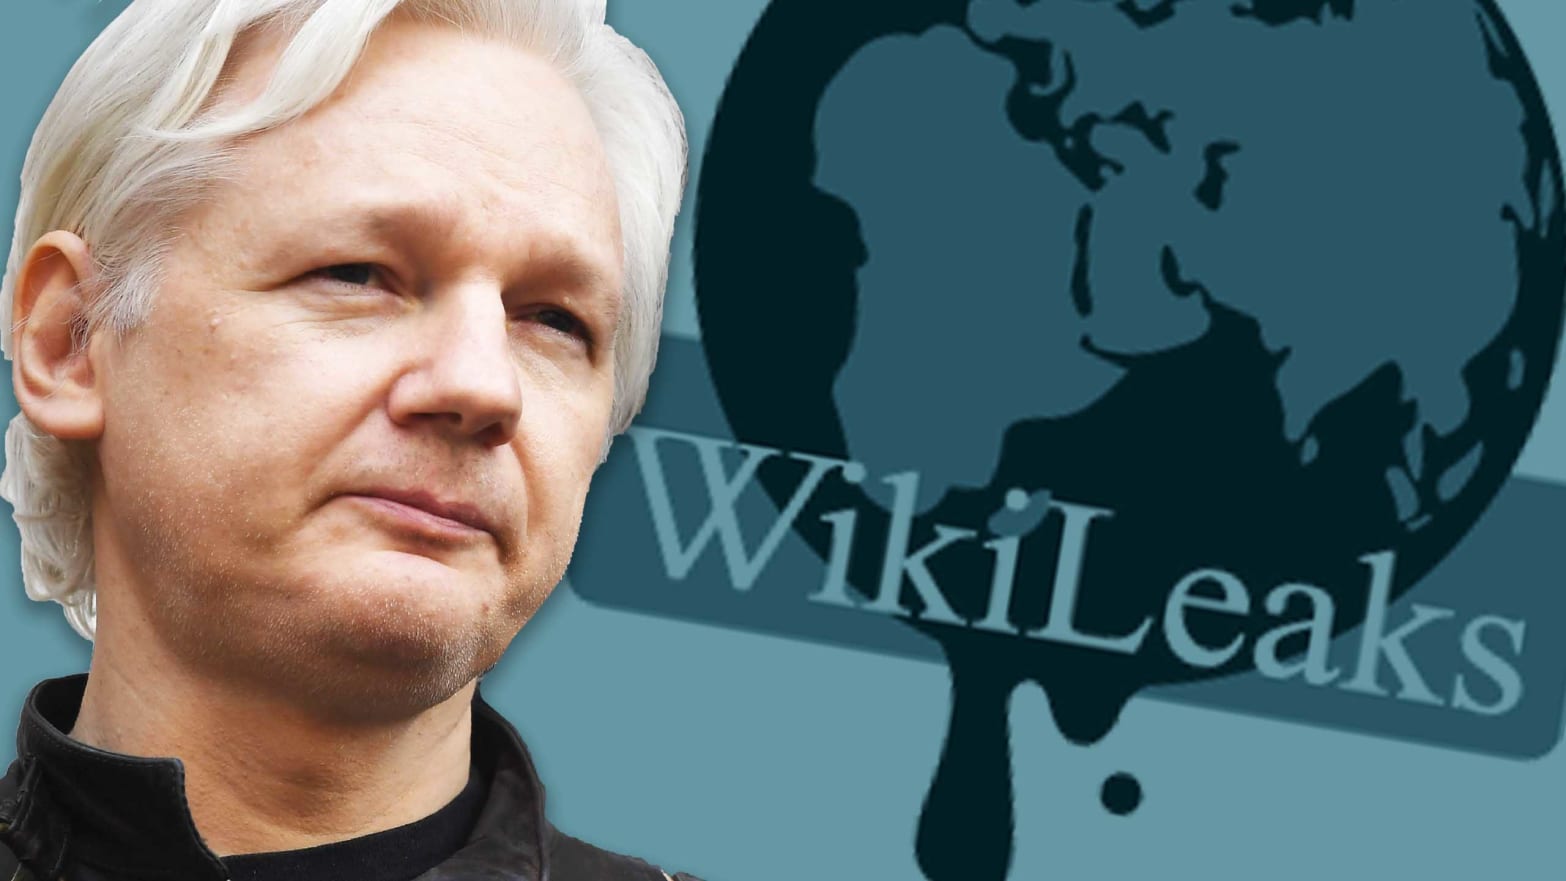 Resultado de imagen para wikileaks